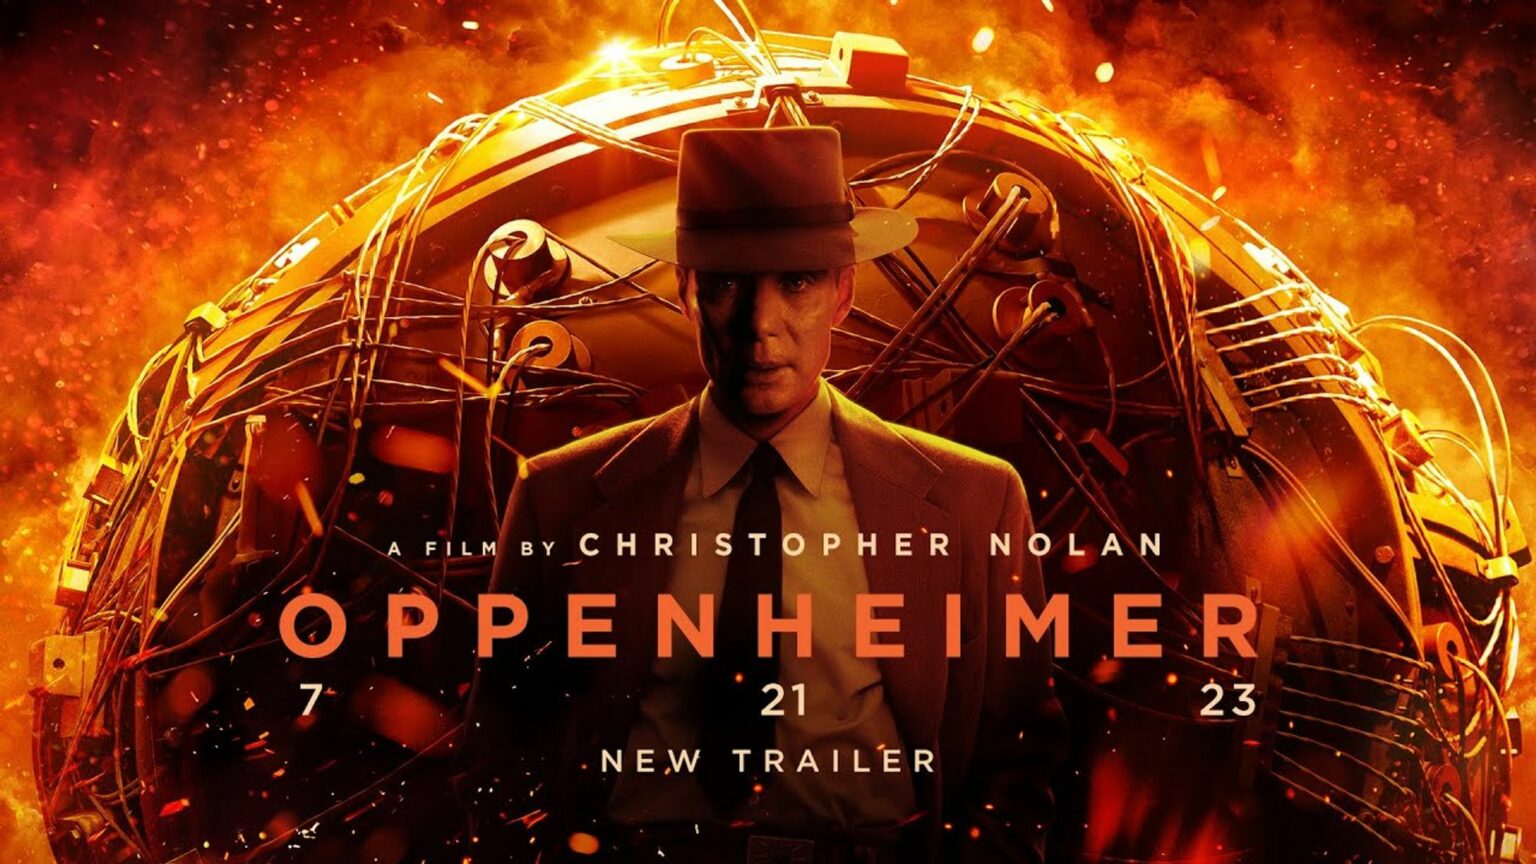 Christopher Nolan επιστρέφει με το Oppenheimer